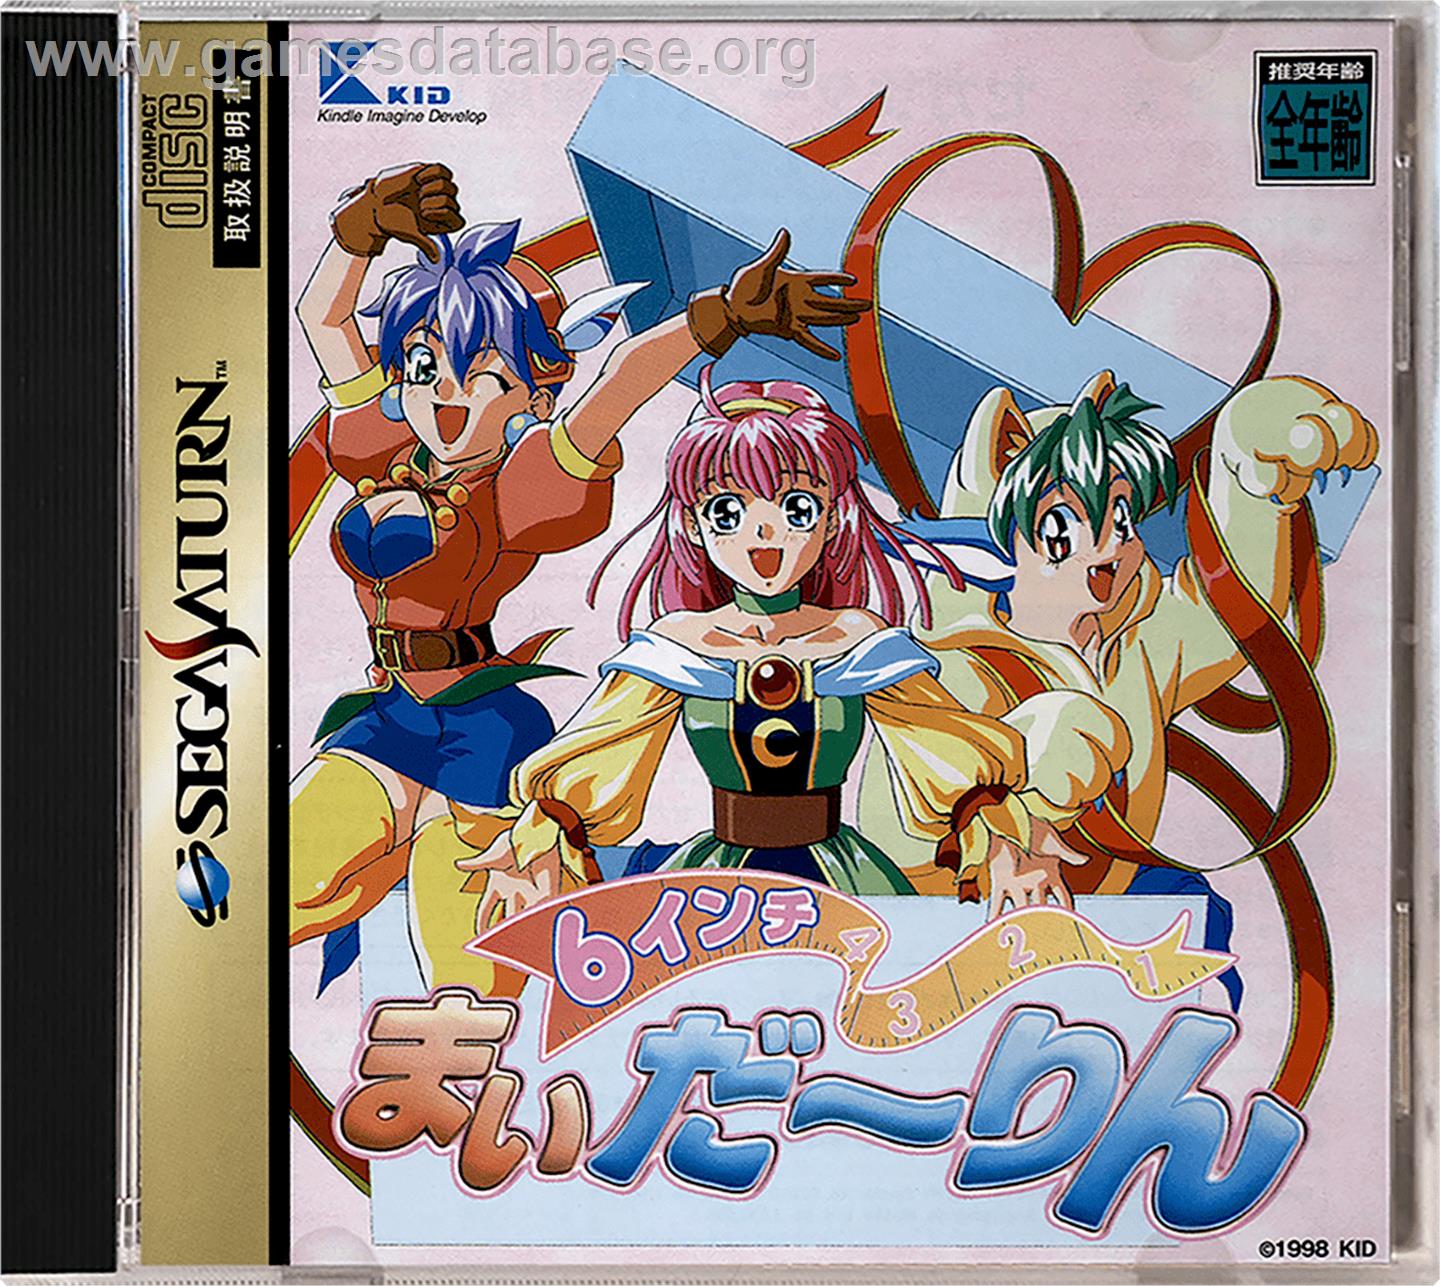 6 Inch My Darling - Sega Saturn - Artwork - Box